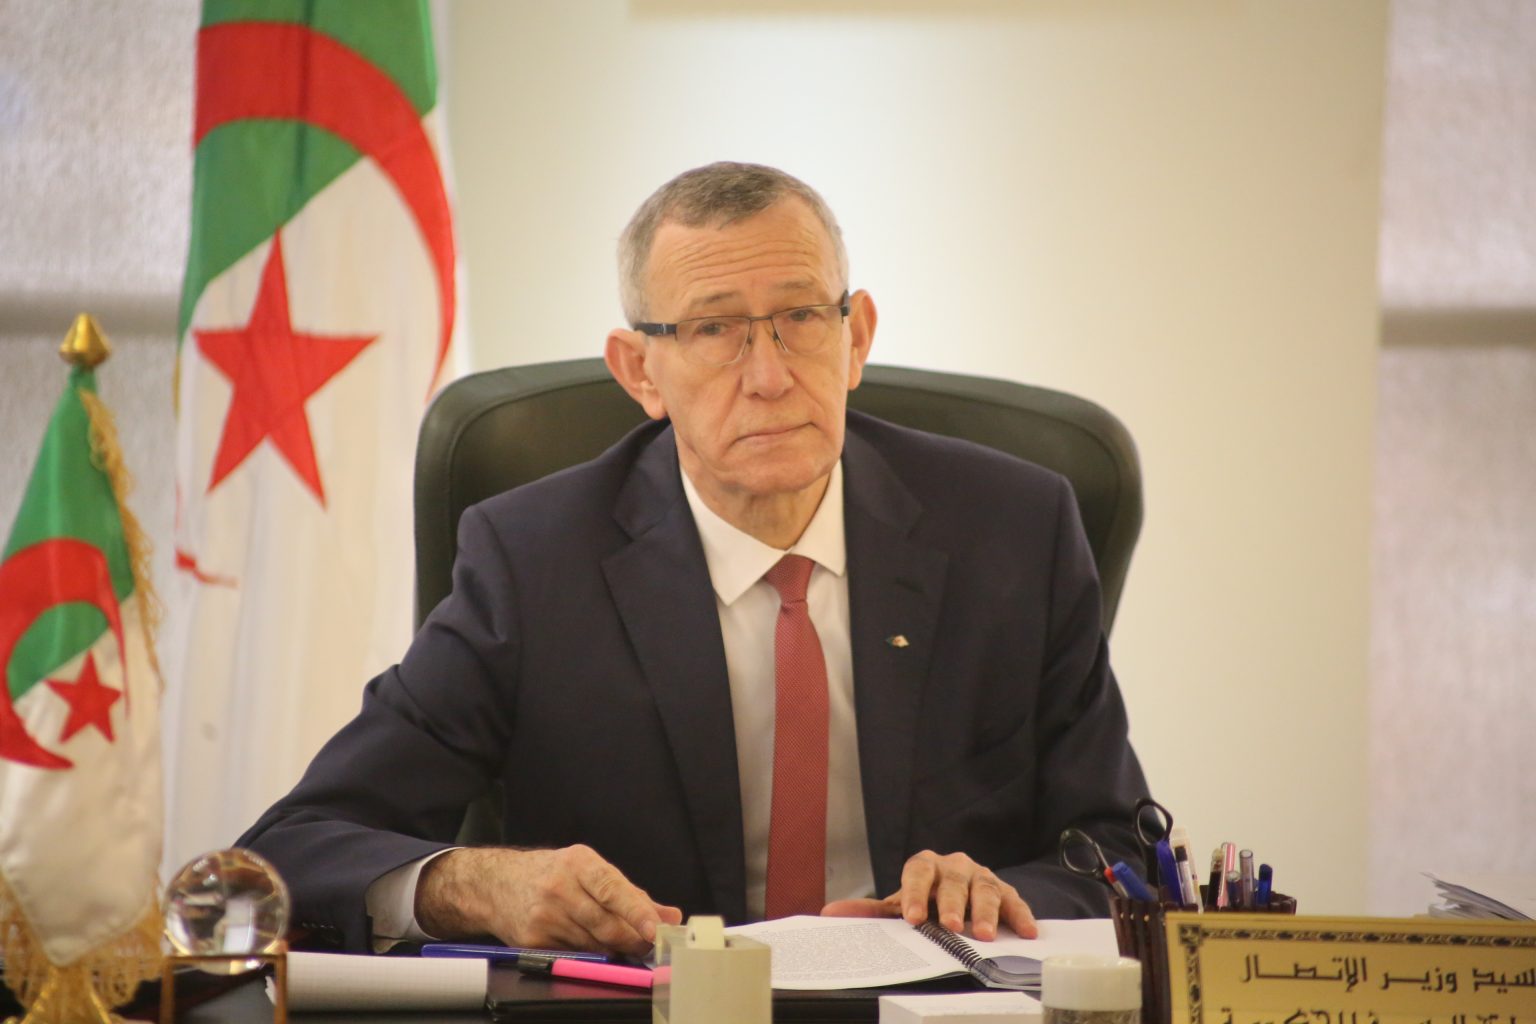 الوزير بلحيمر: لا ننتظر من إعلام هواة التطبيع إنصاف الجزائر وأطراف خارجية تستعمل الحراك الجديد 